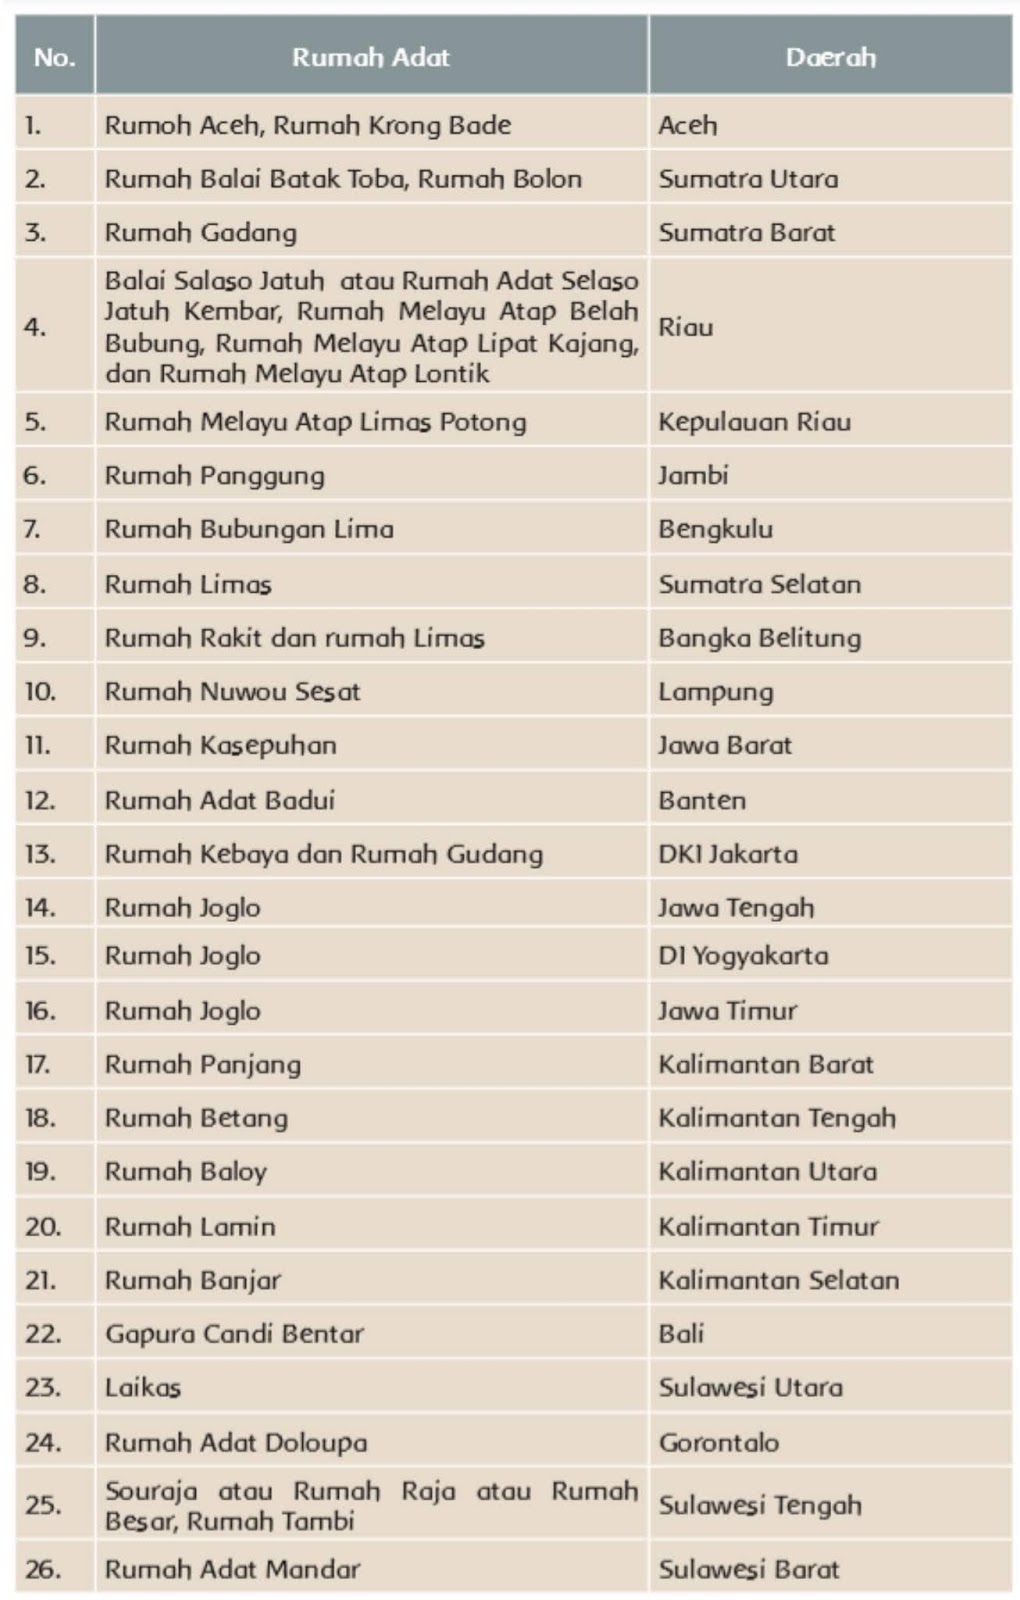 Berikut nama beberapa rumah adat dari berbagai daerah di Indonesia.